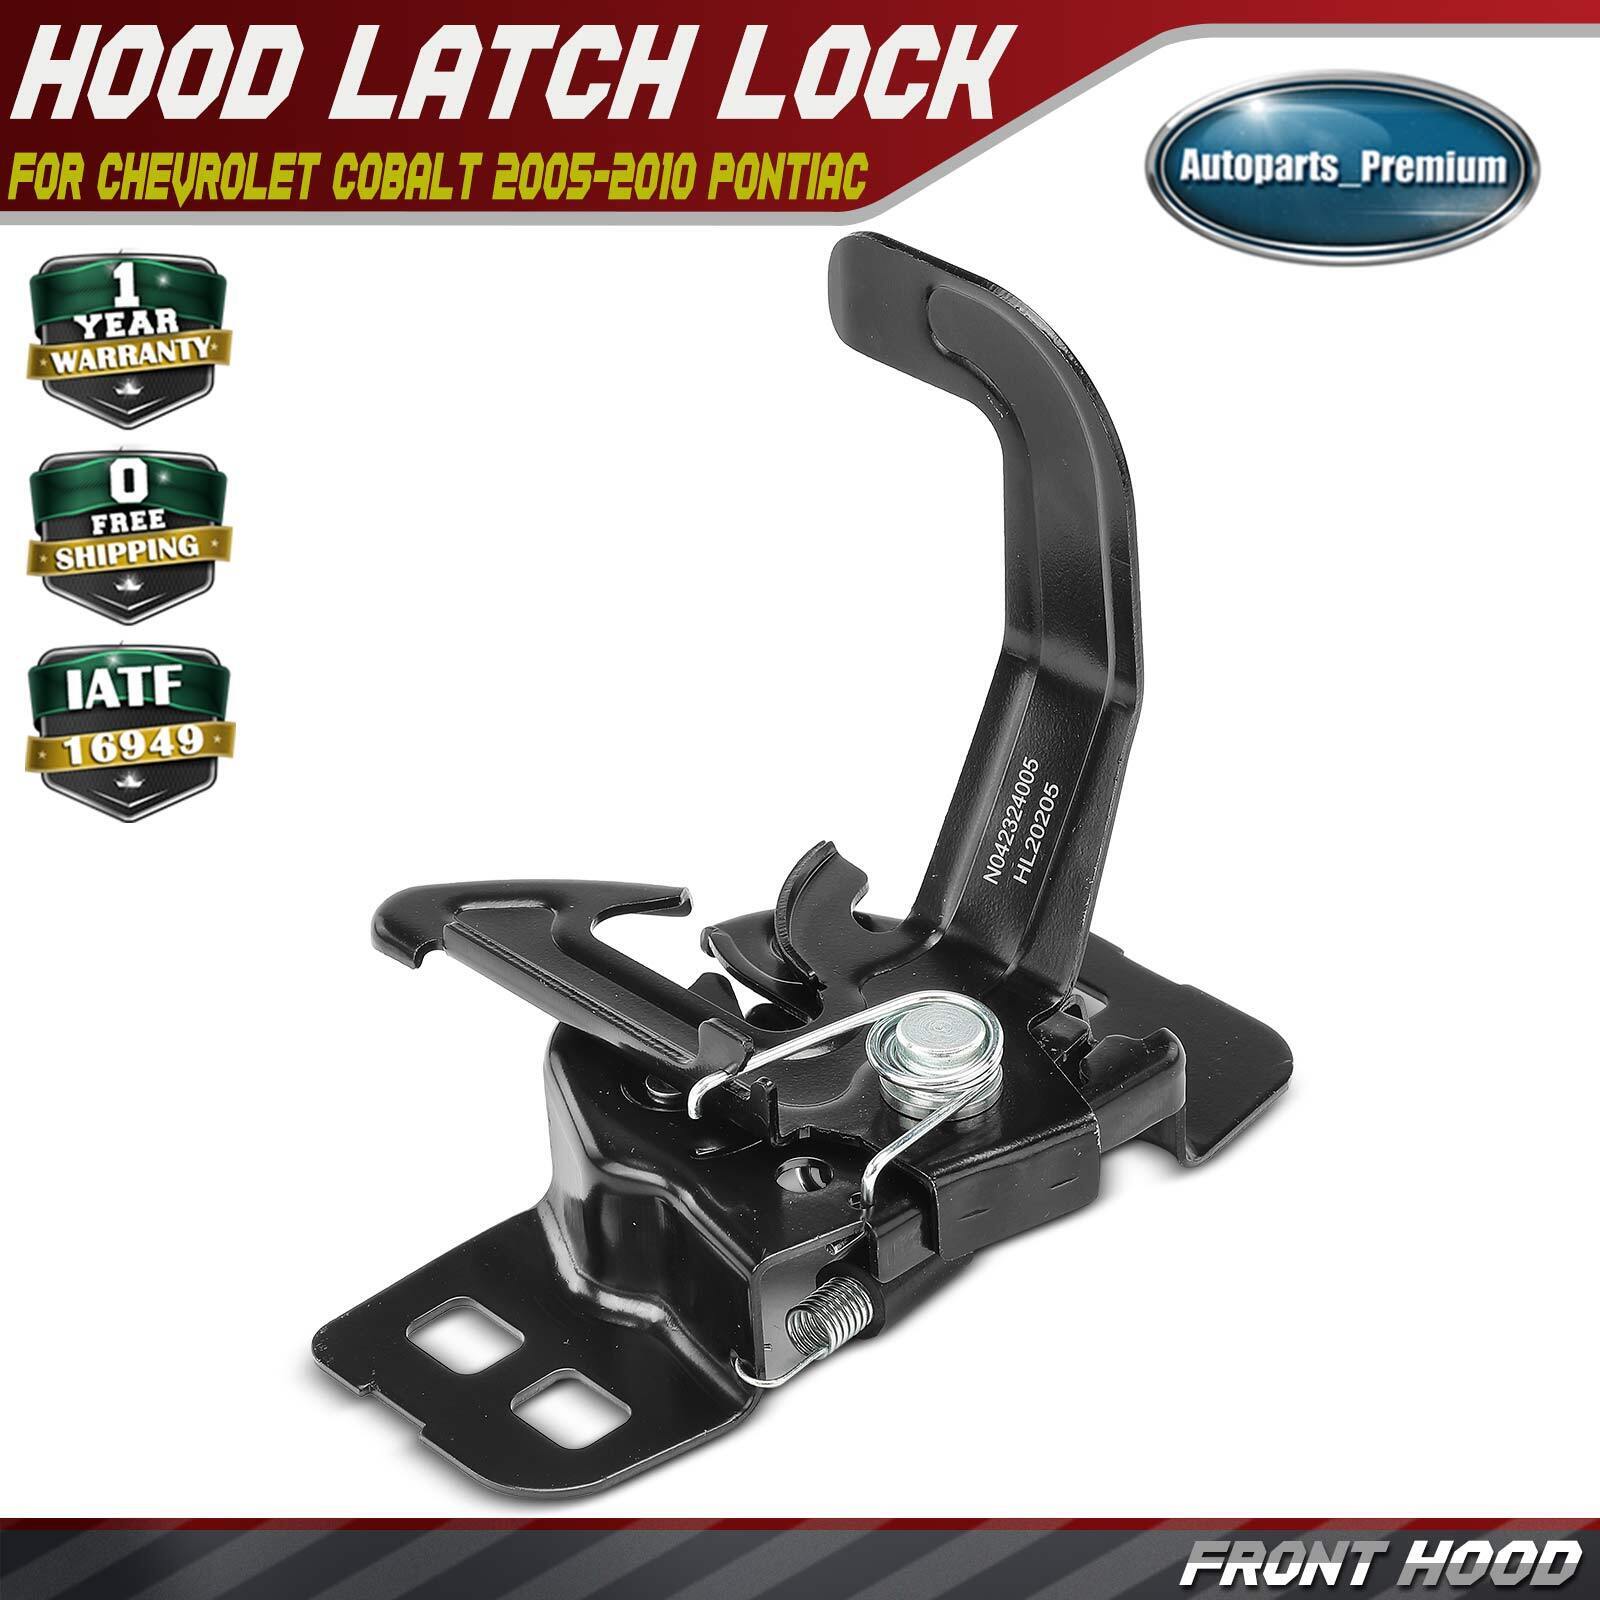 Front Hood Latch Lock for Chevrolet Cobalt 2005-2010 Pontiac G5 07-10 Pursuit